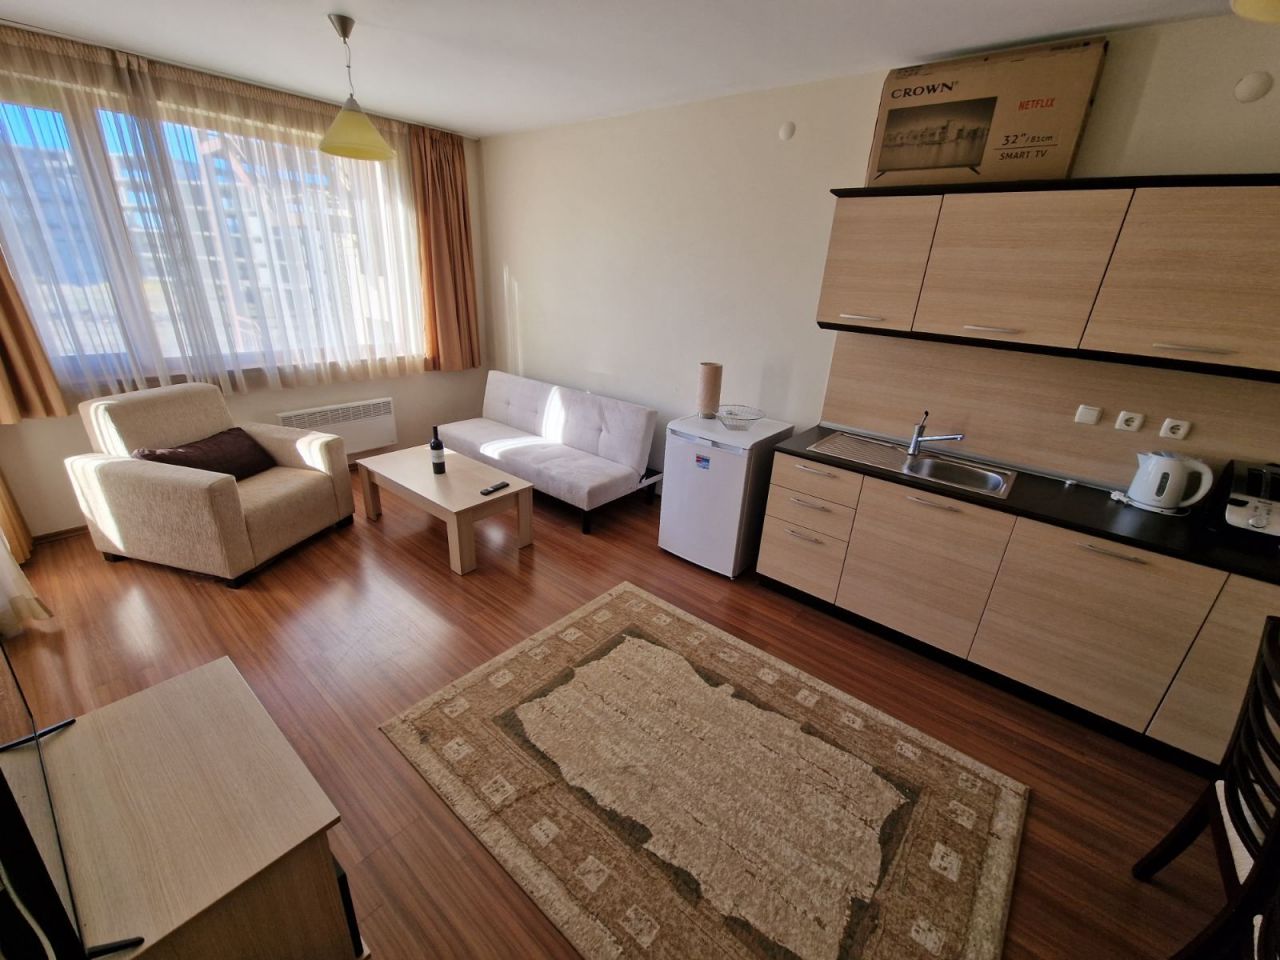 Апартаменты в Банско, Болгария, 66 м2 - фото 1